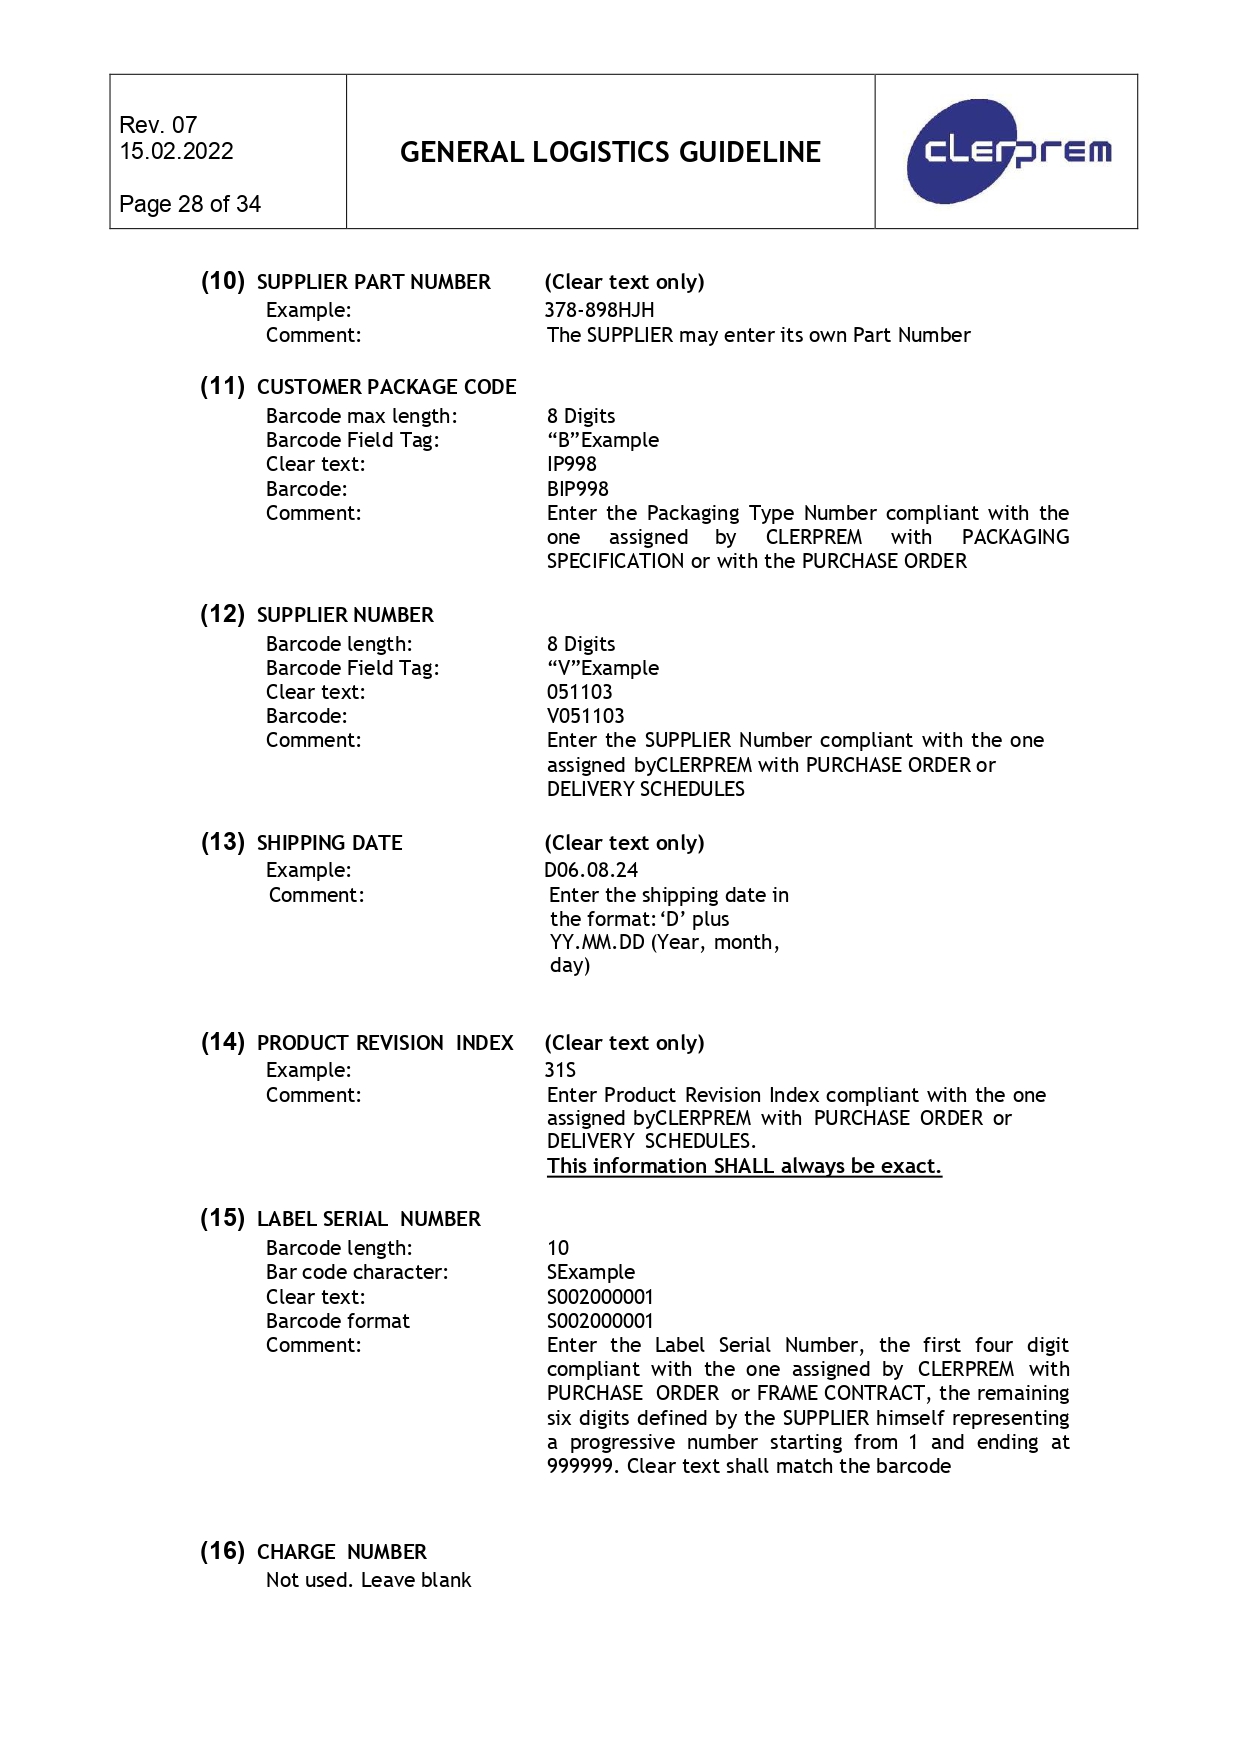 General Logistics Guideline Clerprem SpA Rev 08_page-0029